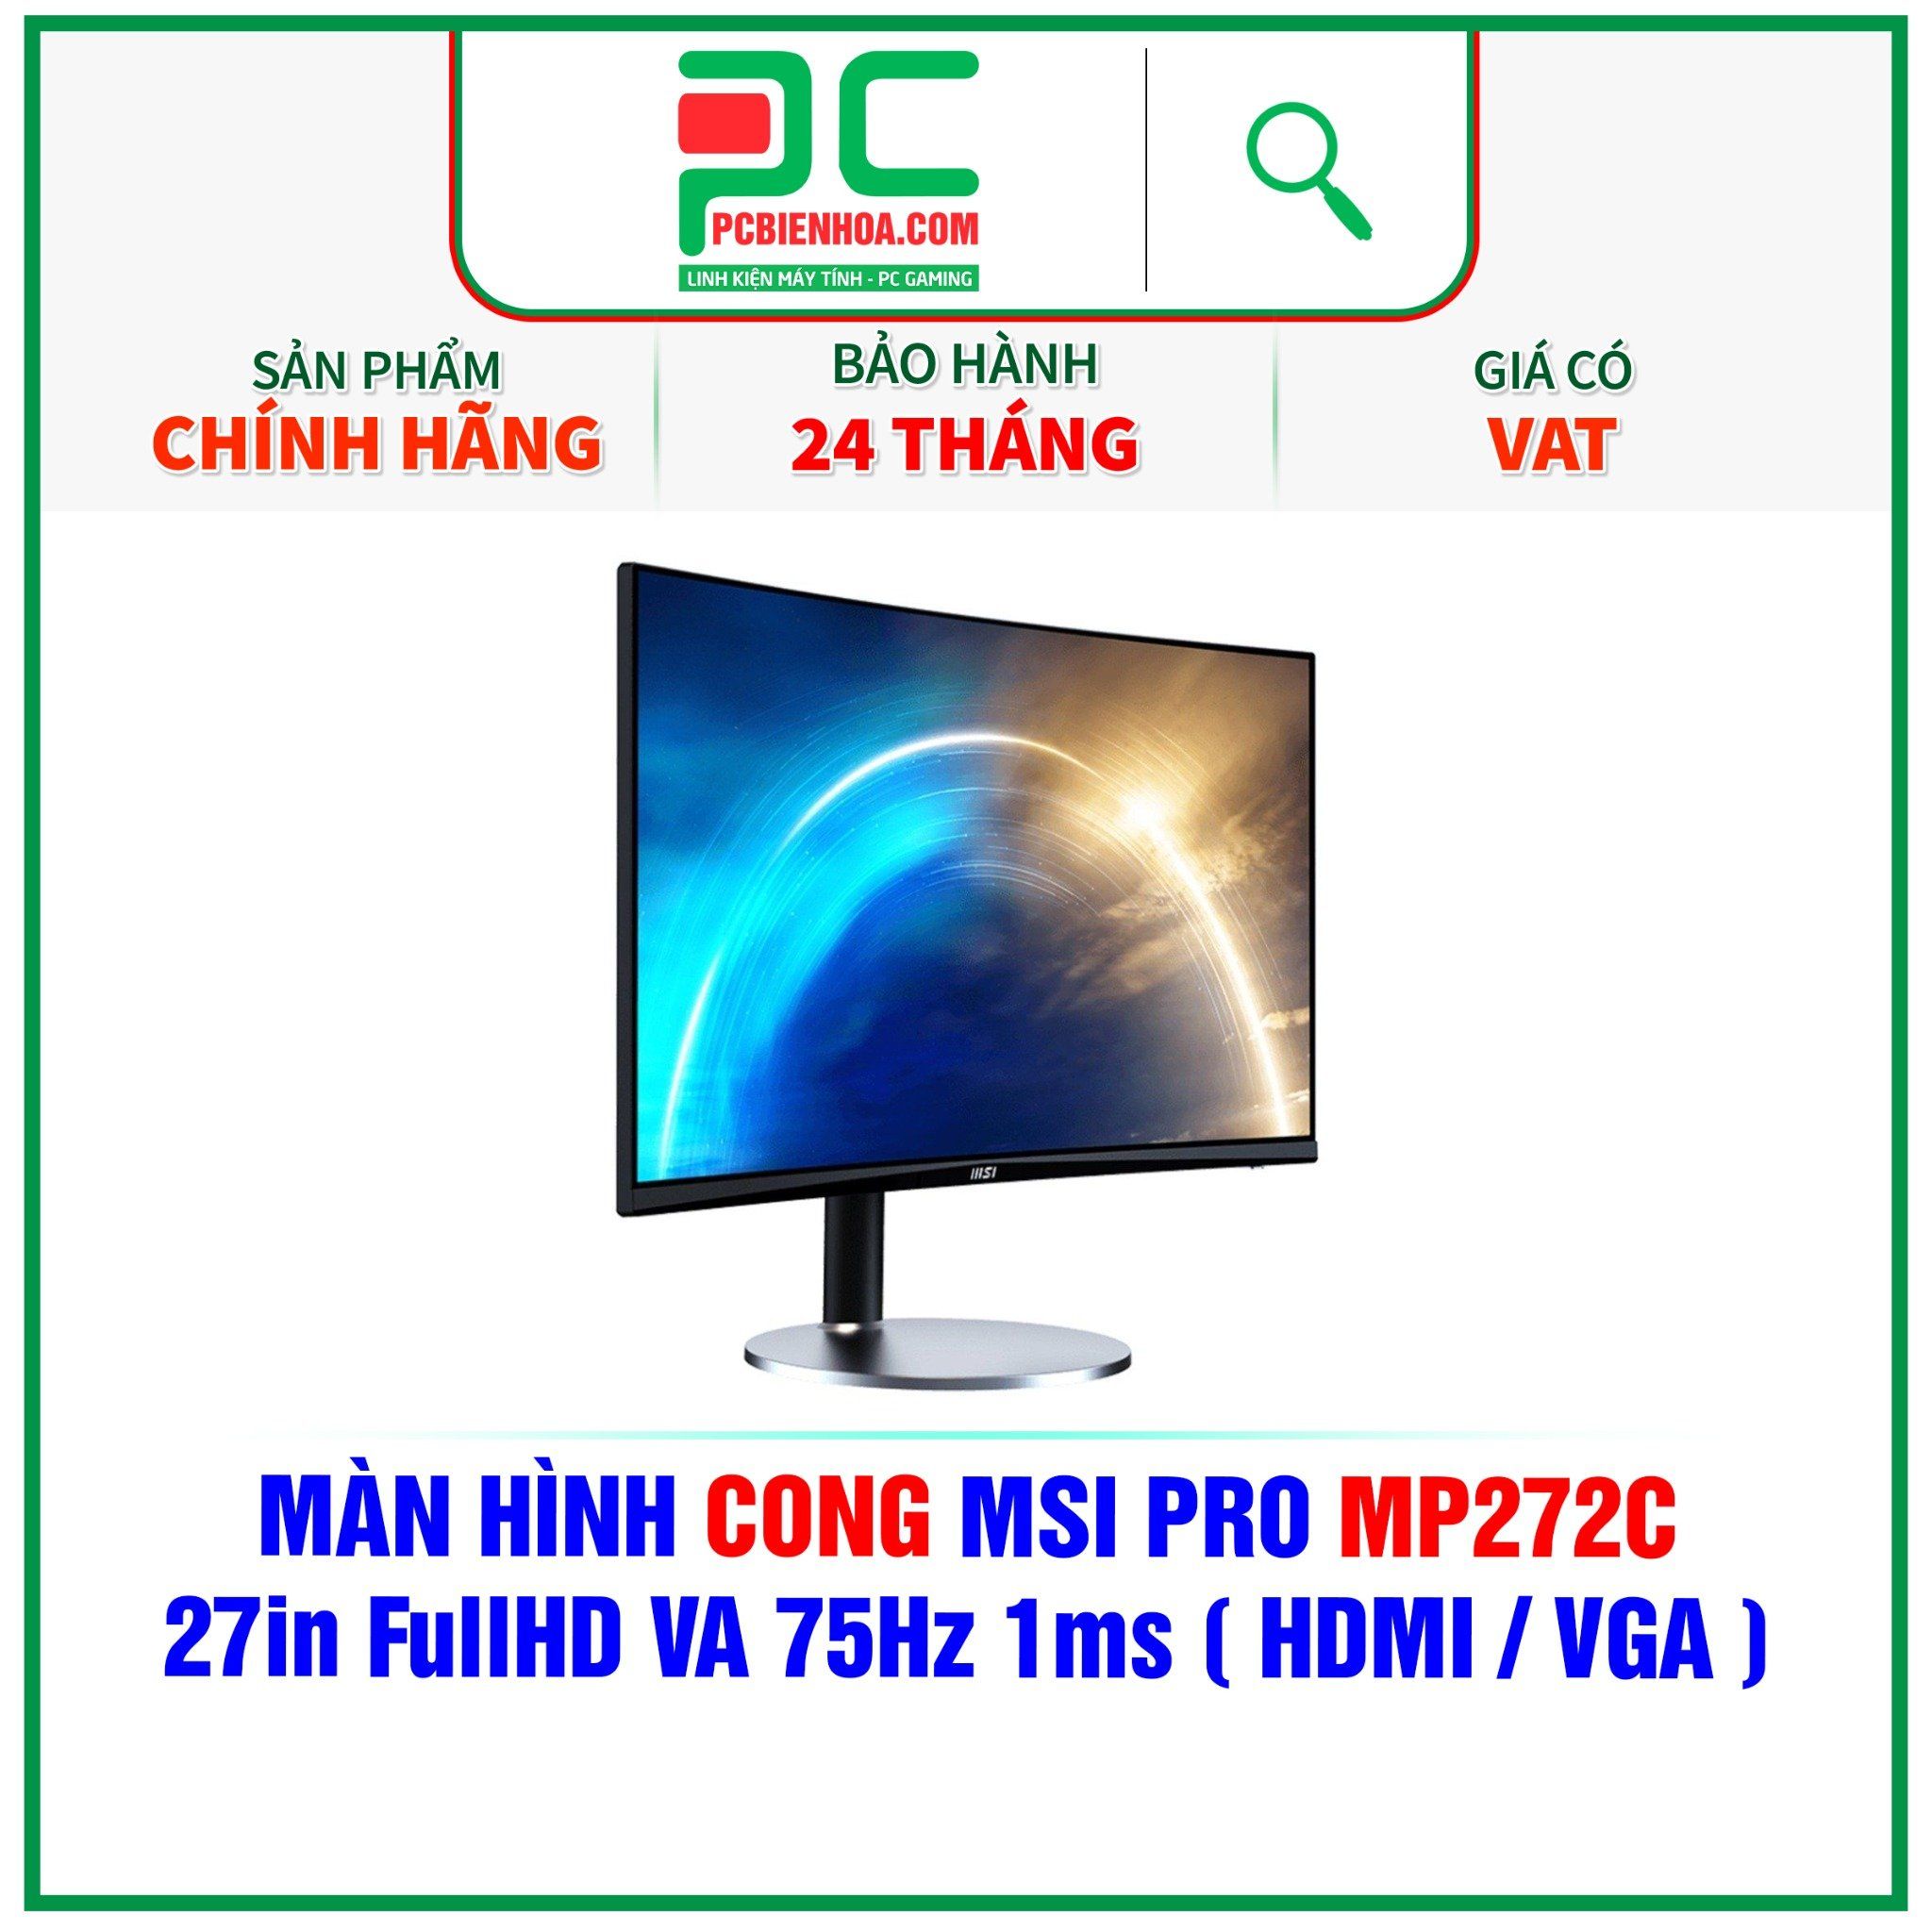  MÀN HÌNH CONG MSI PRO MP272C - 27in FullHD VA 75Hz 1ms ( HDMI / VGA ) 